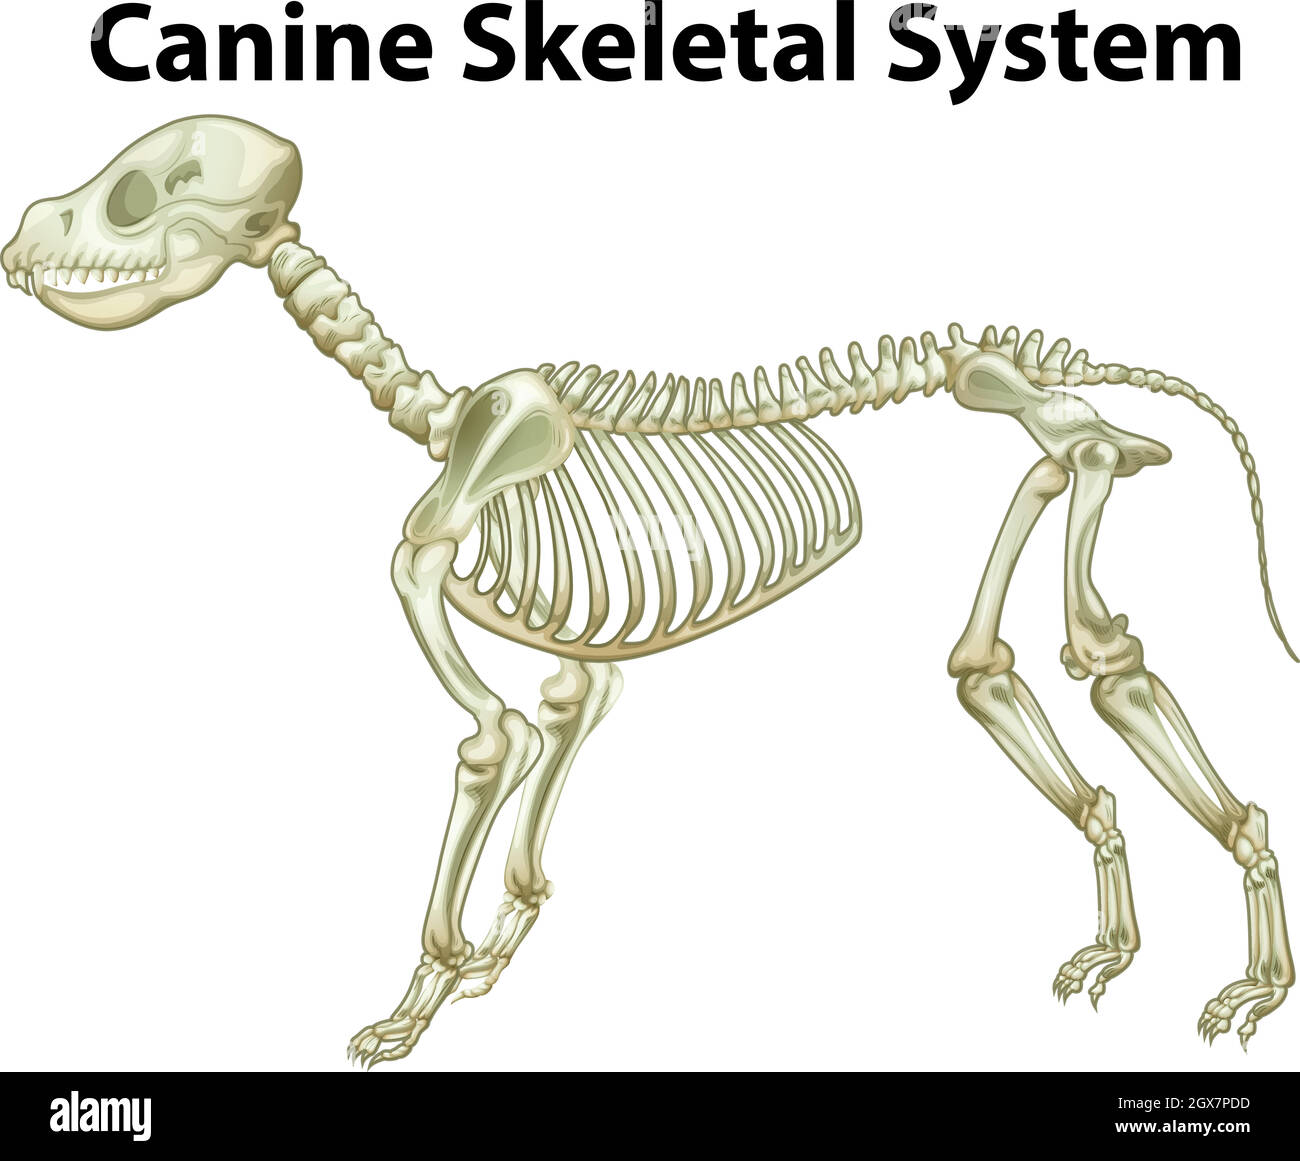 Skelettsystem des Hundes Stock Vektor